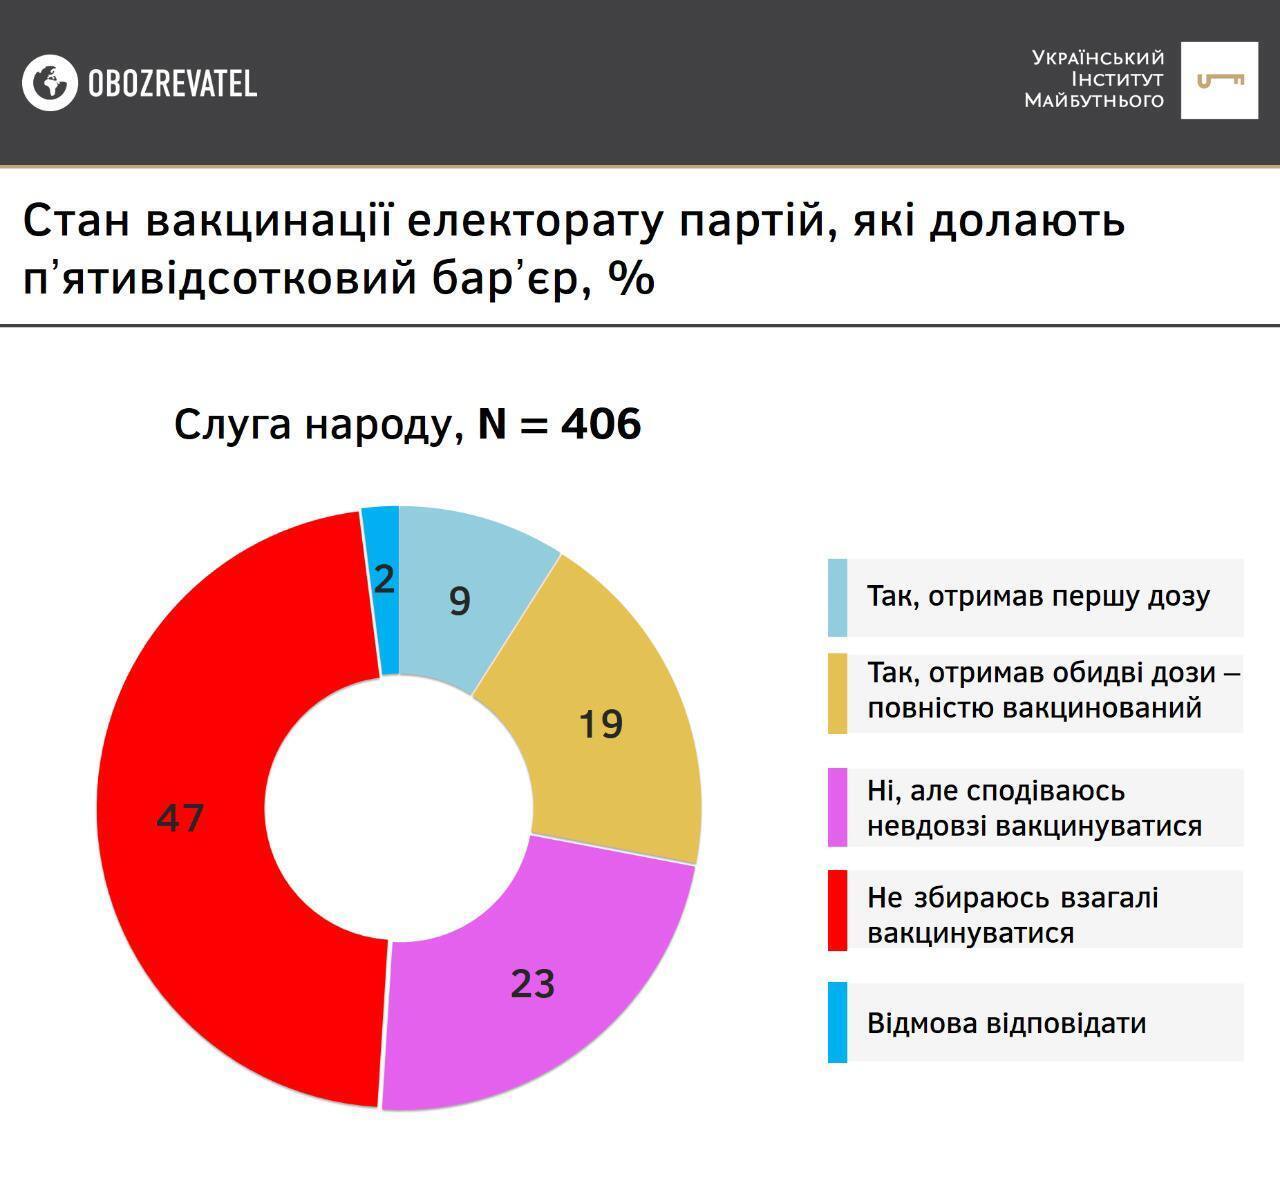 Результаты опроса среди сторонников партии "Слуга народа"